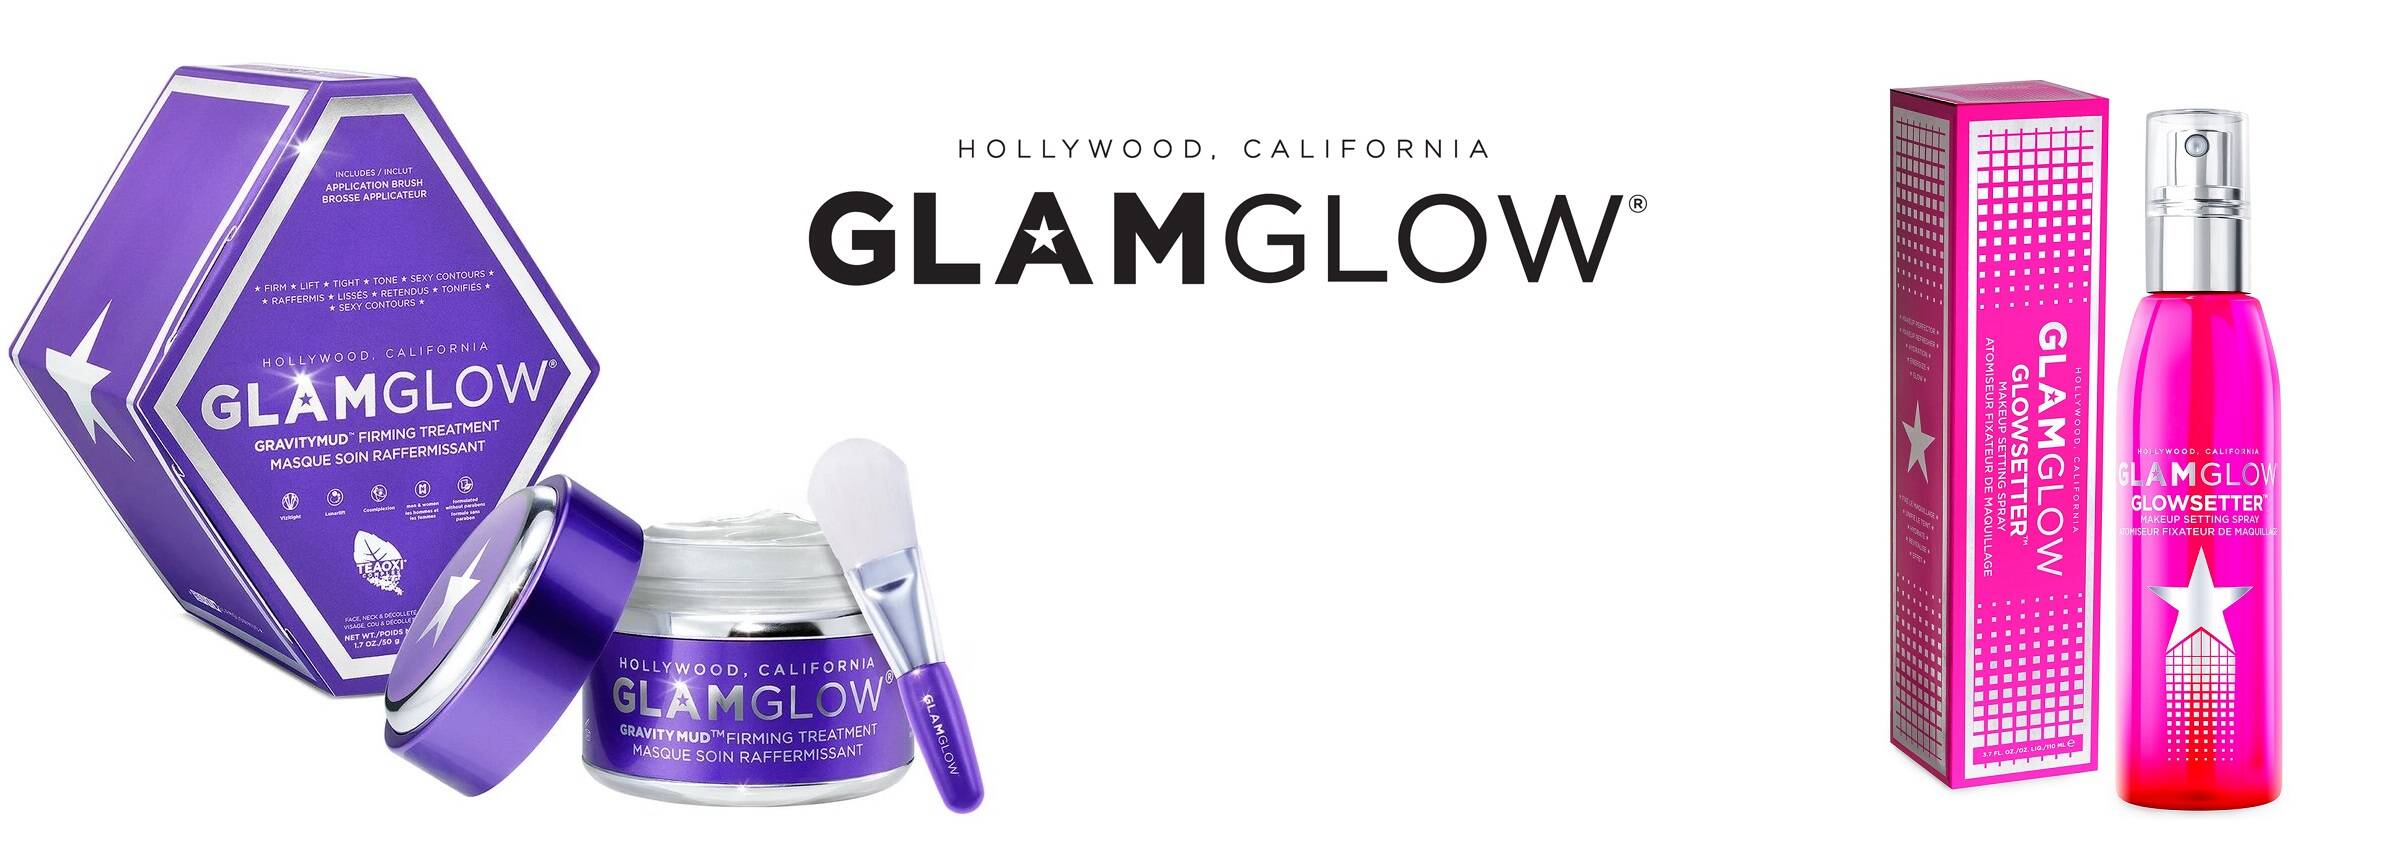 اسپری فیکساتور (تثبیت) آرایش Glowsetter گلم گلو (GlamGlow) | انرژی دهنده و درخشان کننده میکاپ